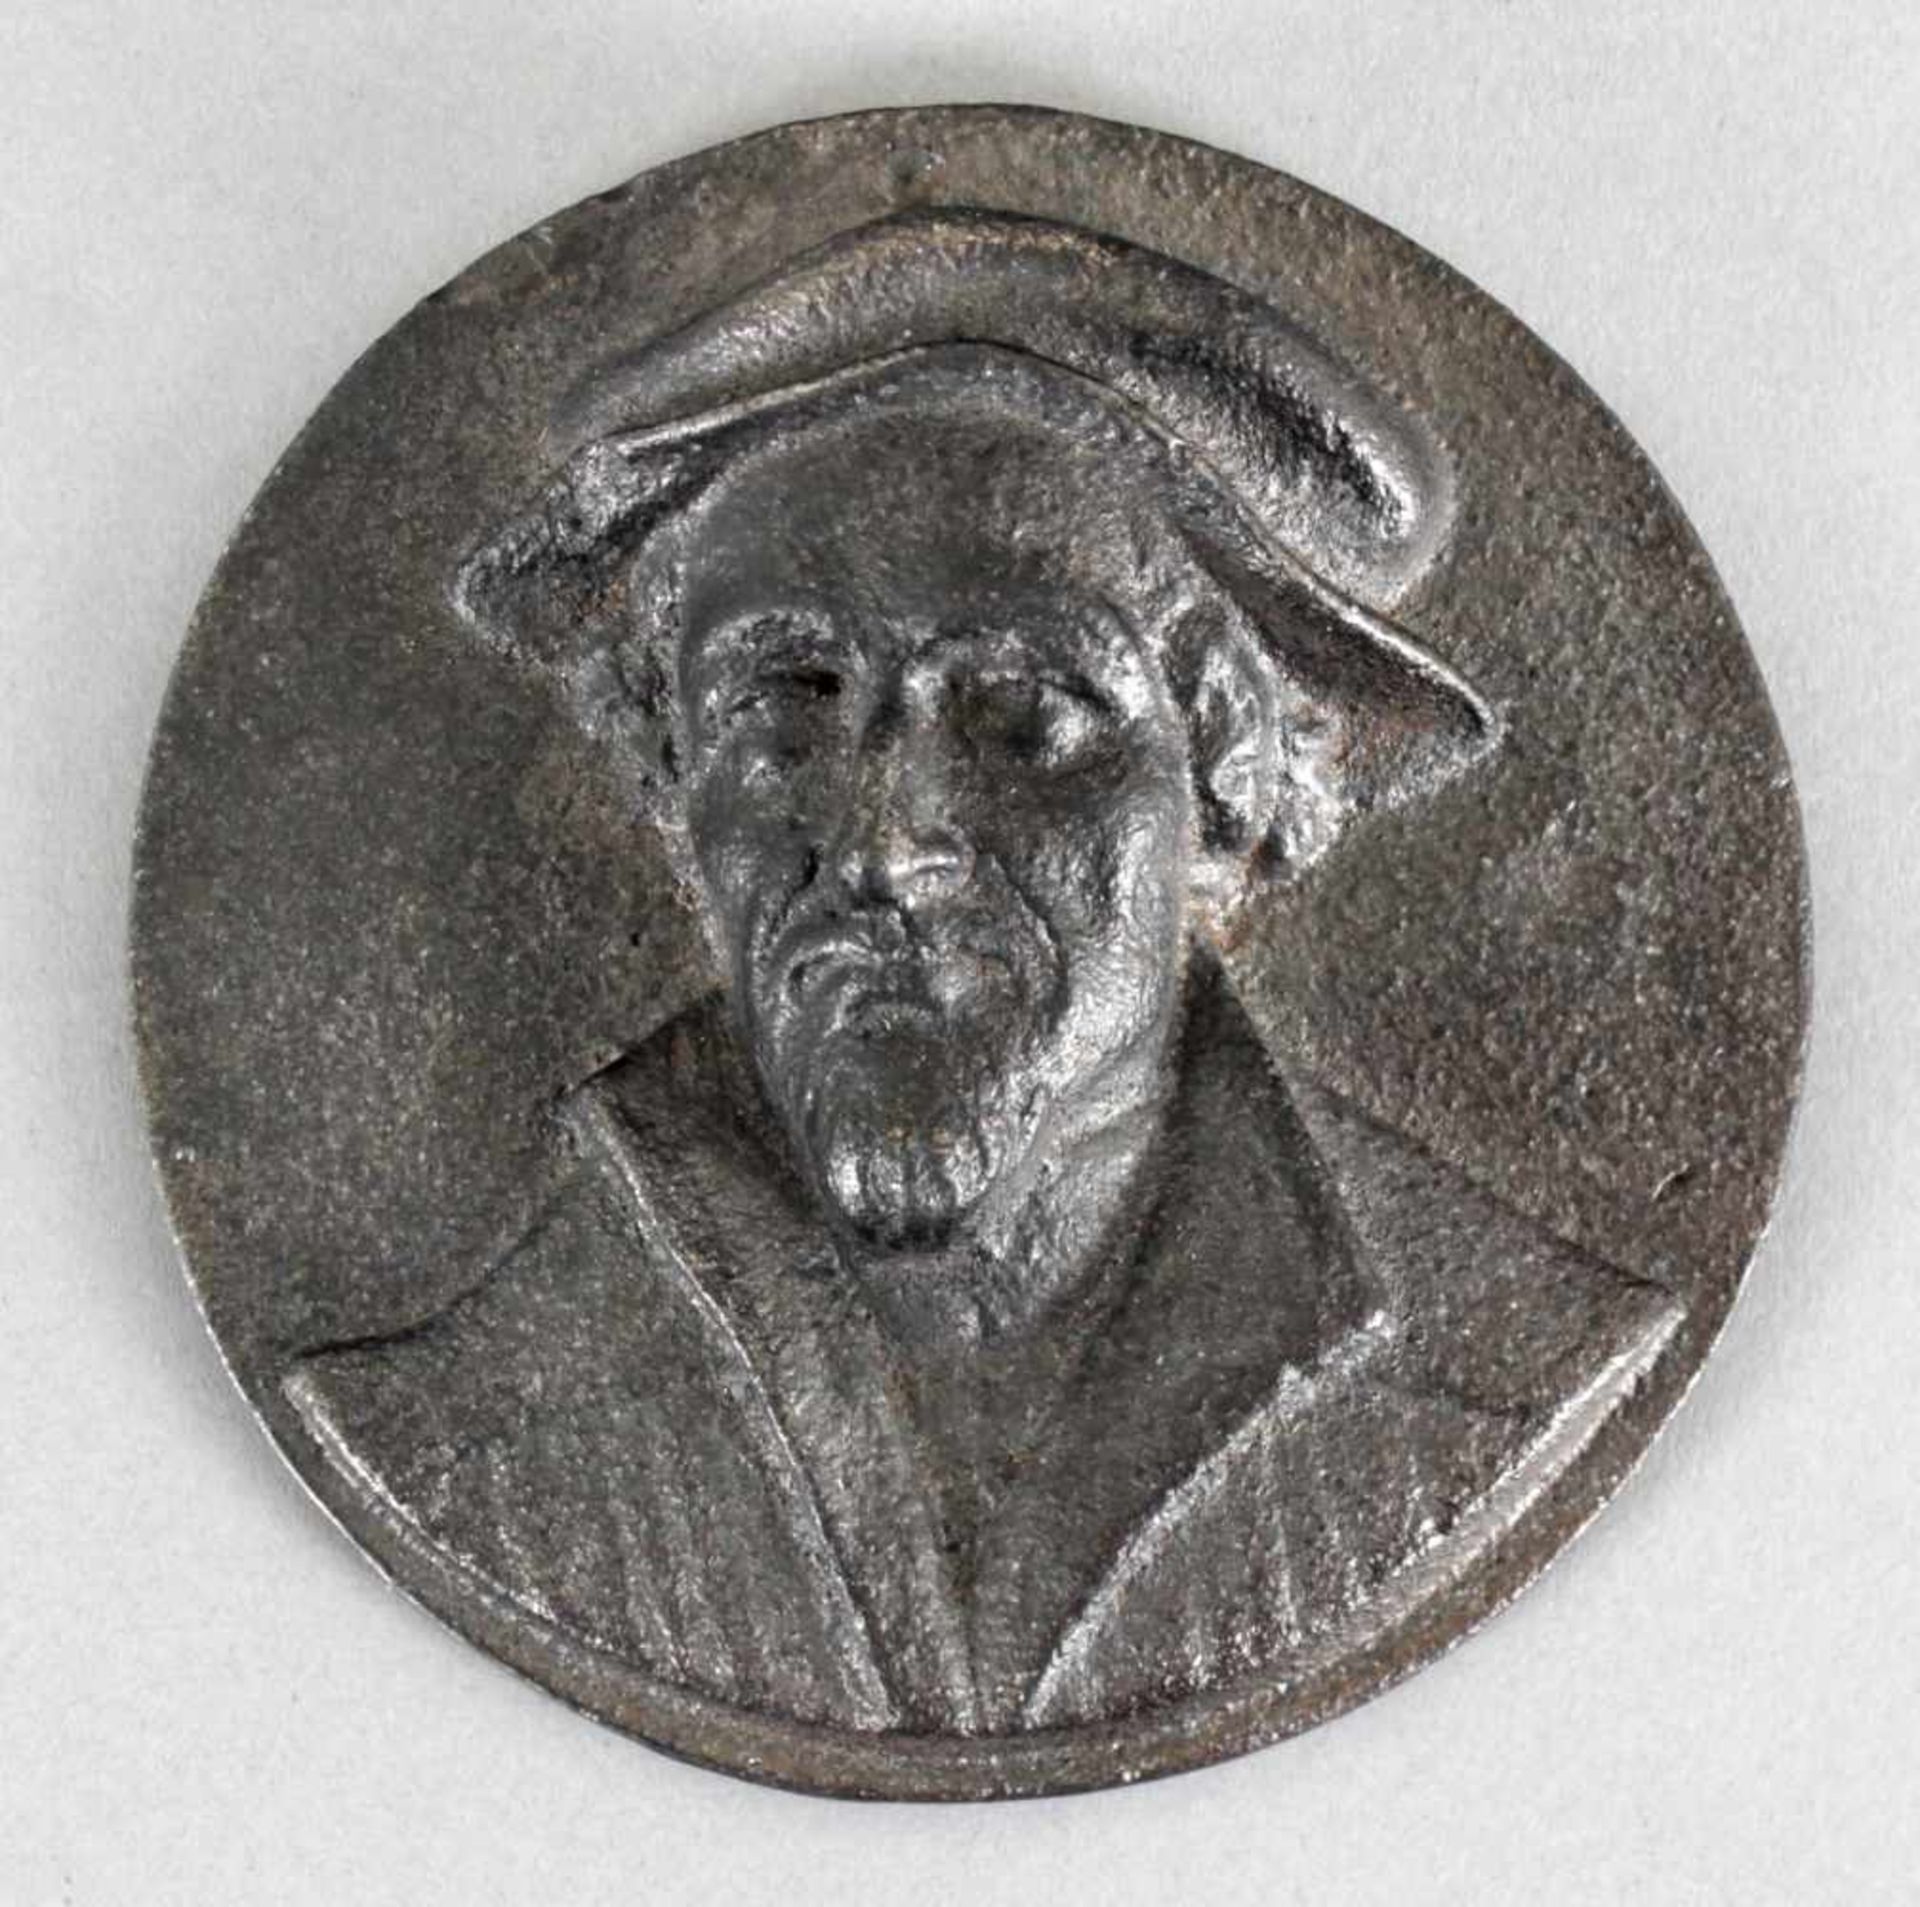 Melanchton-Relief, Eisenkunstguss grau, D: ca. 8,8 cm, 20. Jh.rundes Relief mit Philipp